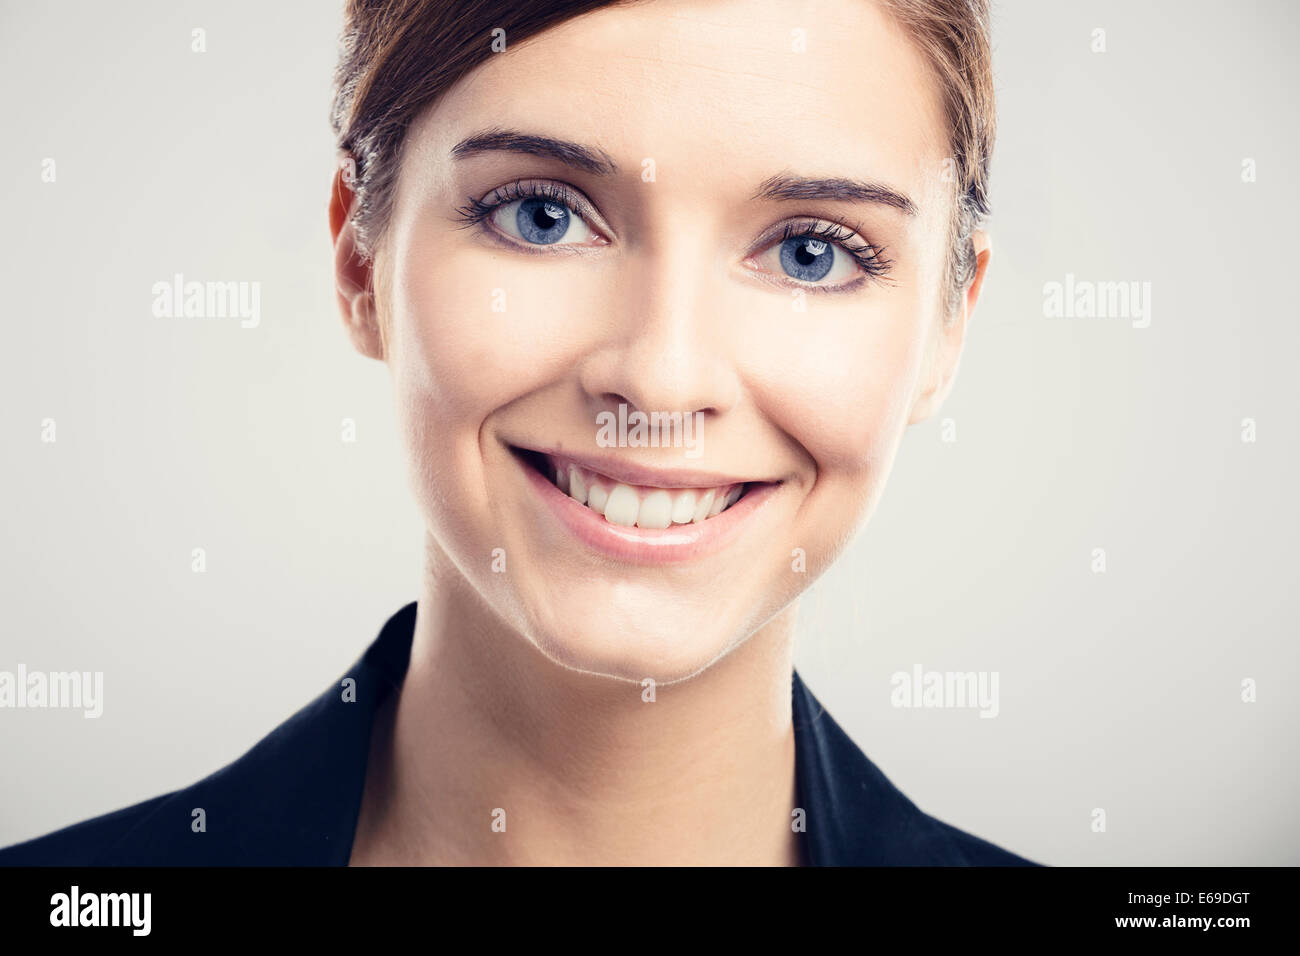 Ritratto di una bella donna bionda con gli occhi blu sorridente Foto Stock